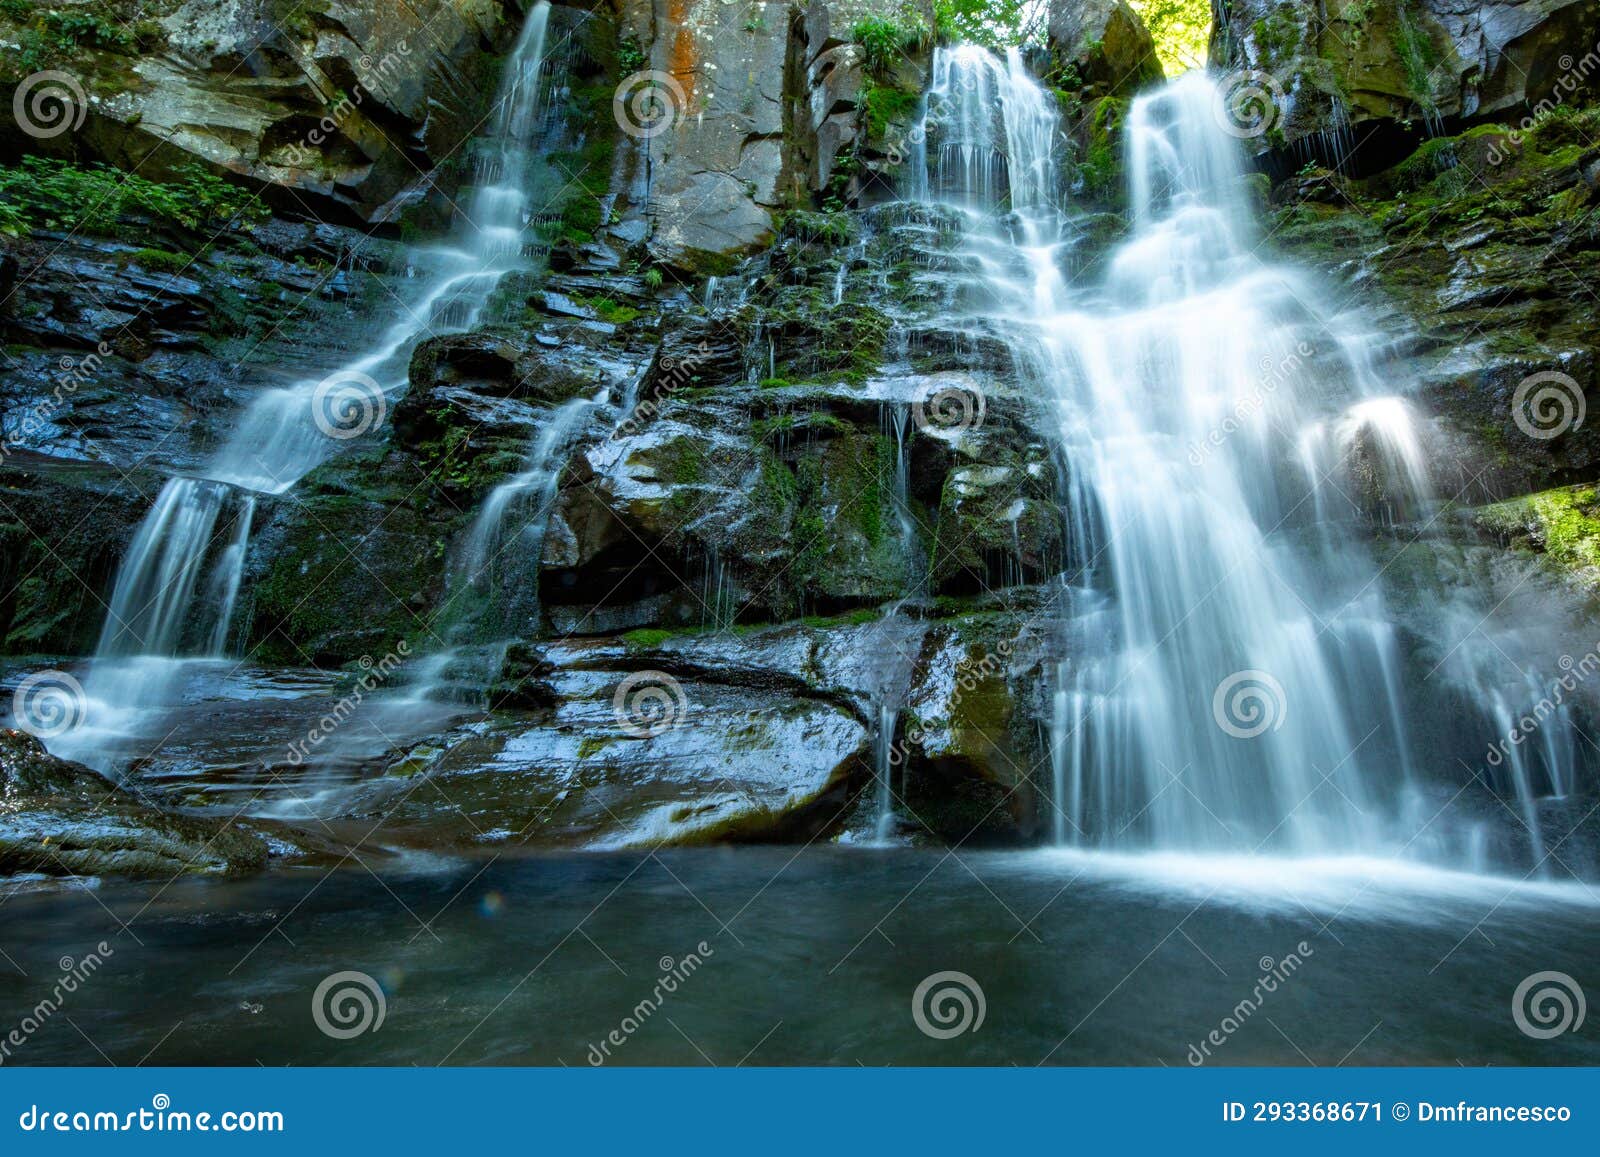 dardagna waterfalls regional park corno alle scale bologna